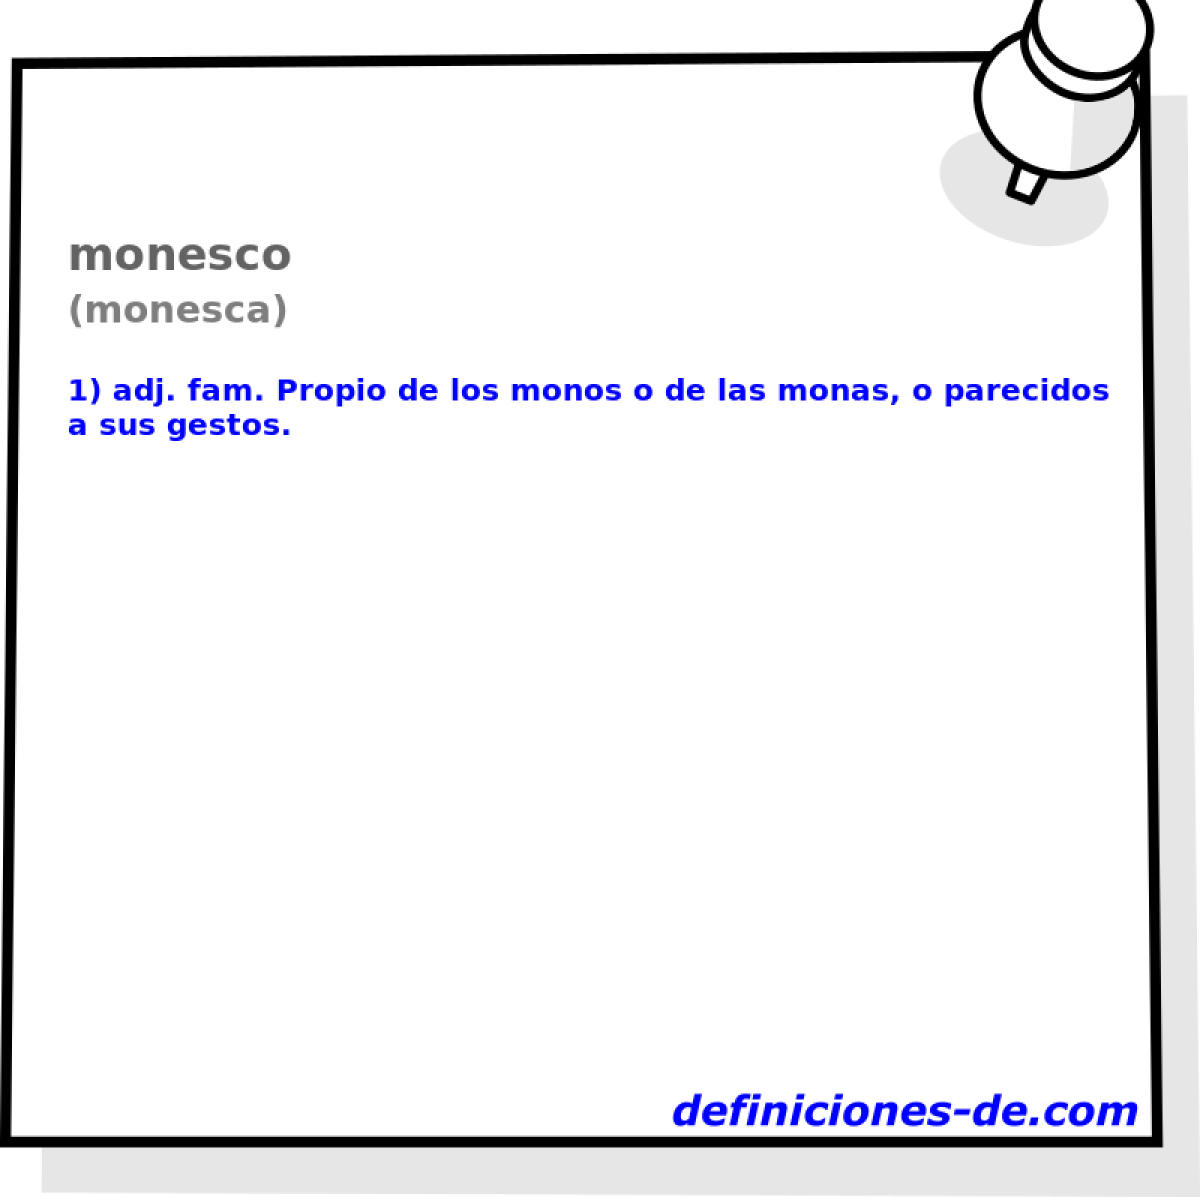 monesco (monesca)